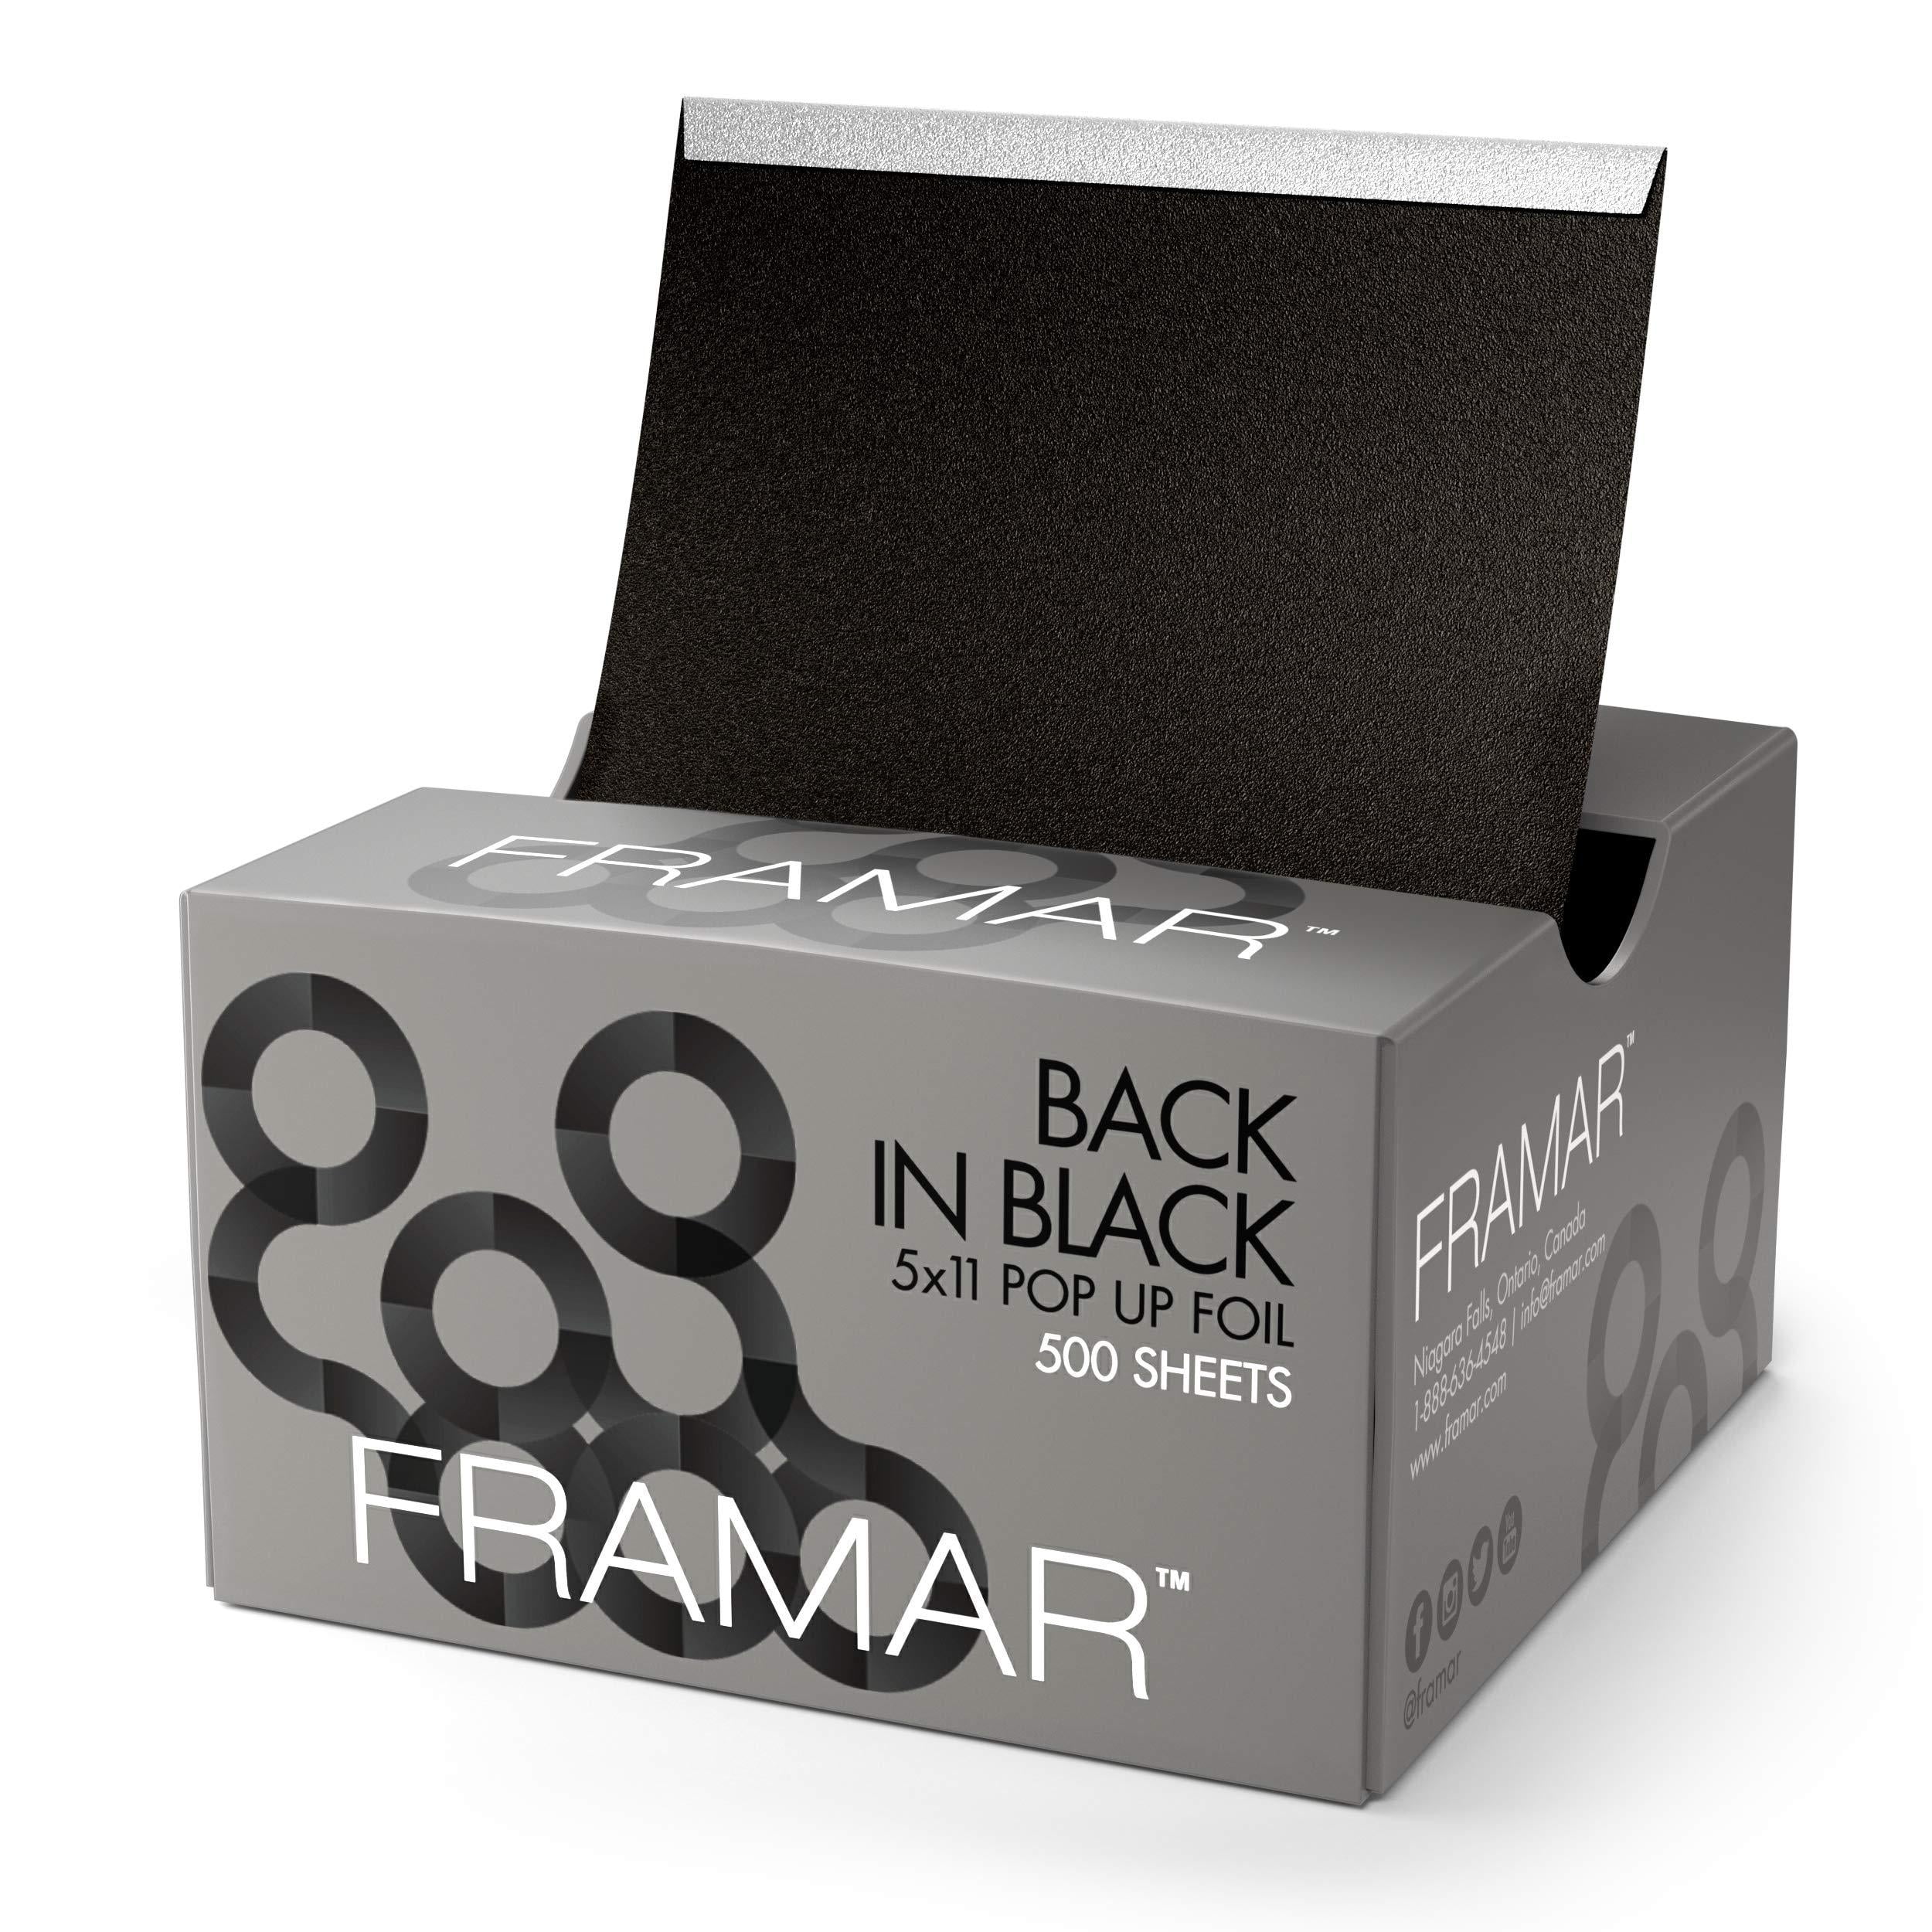 Framar Back in Black Pop Up Foil - 500 Sheets